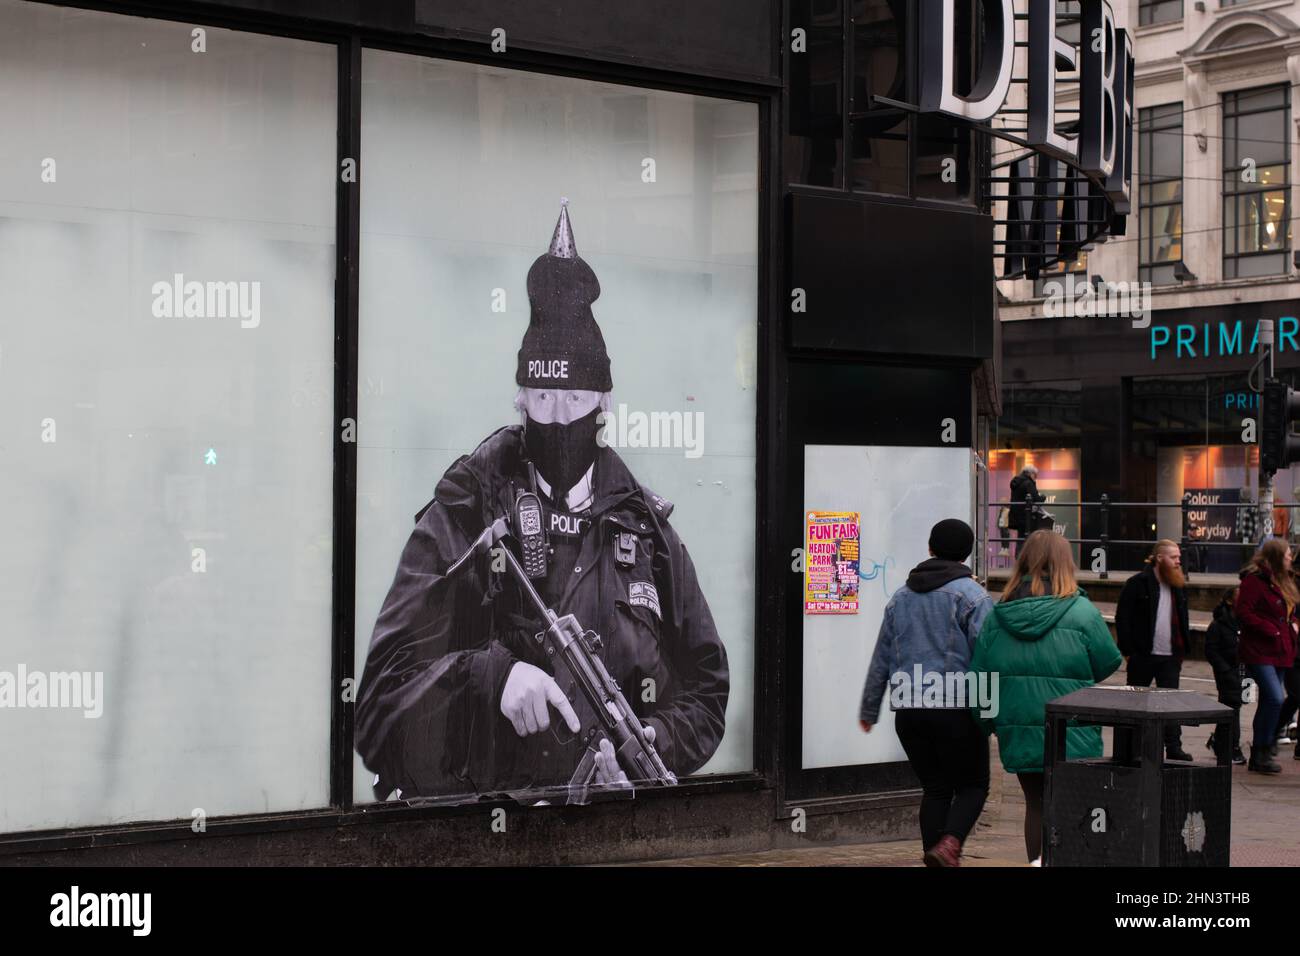 Boris Johnson s'est habillé comme un officier de police métropolitaine. Affiche sur la fenêtre de l'ancien grand magasin Debenhams, Market Street, Manchester. Banque D'Images